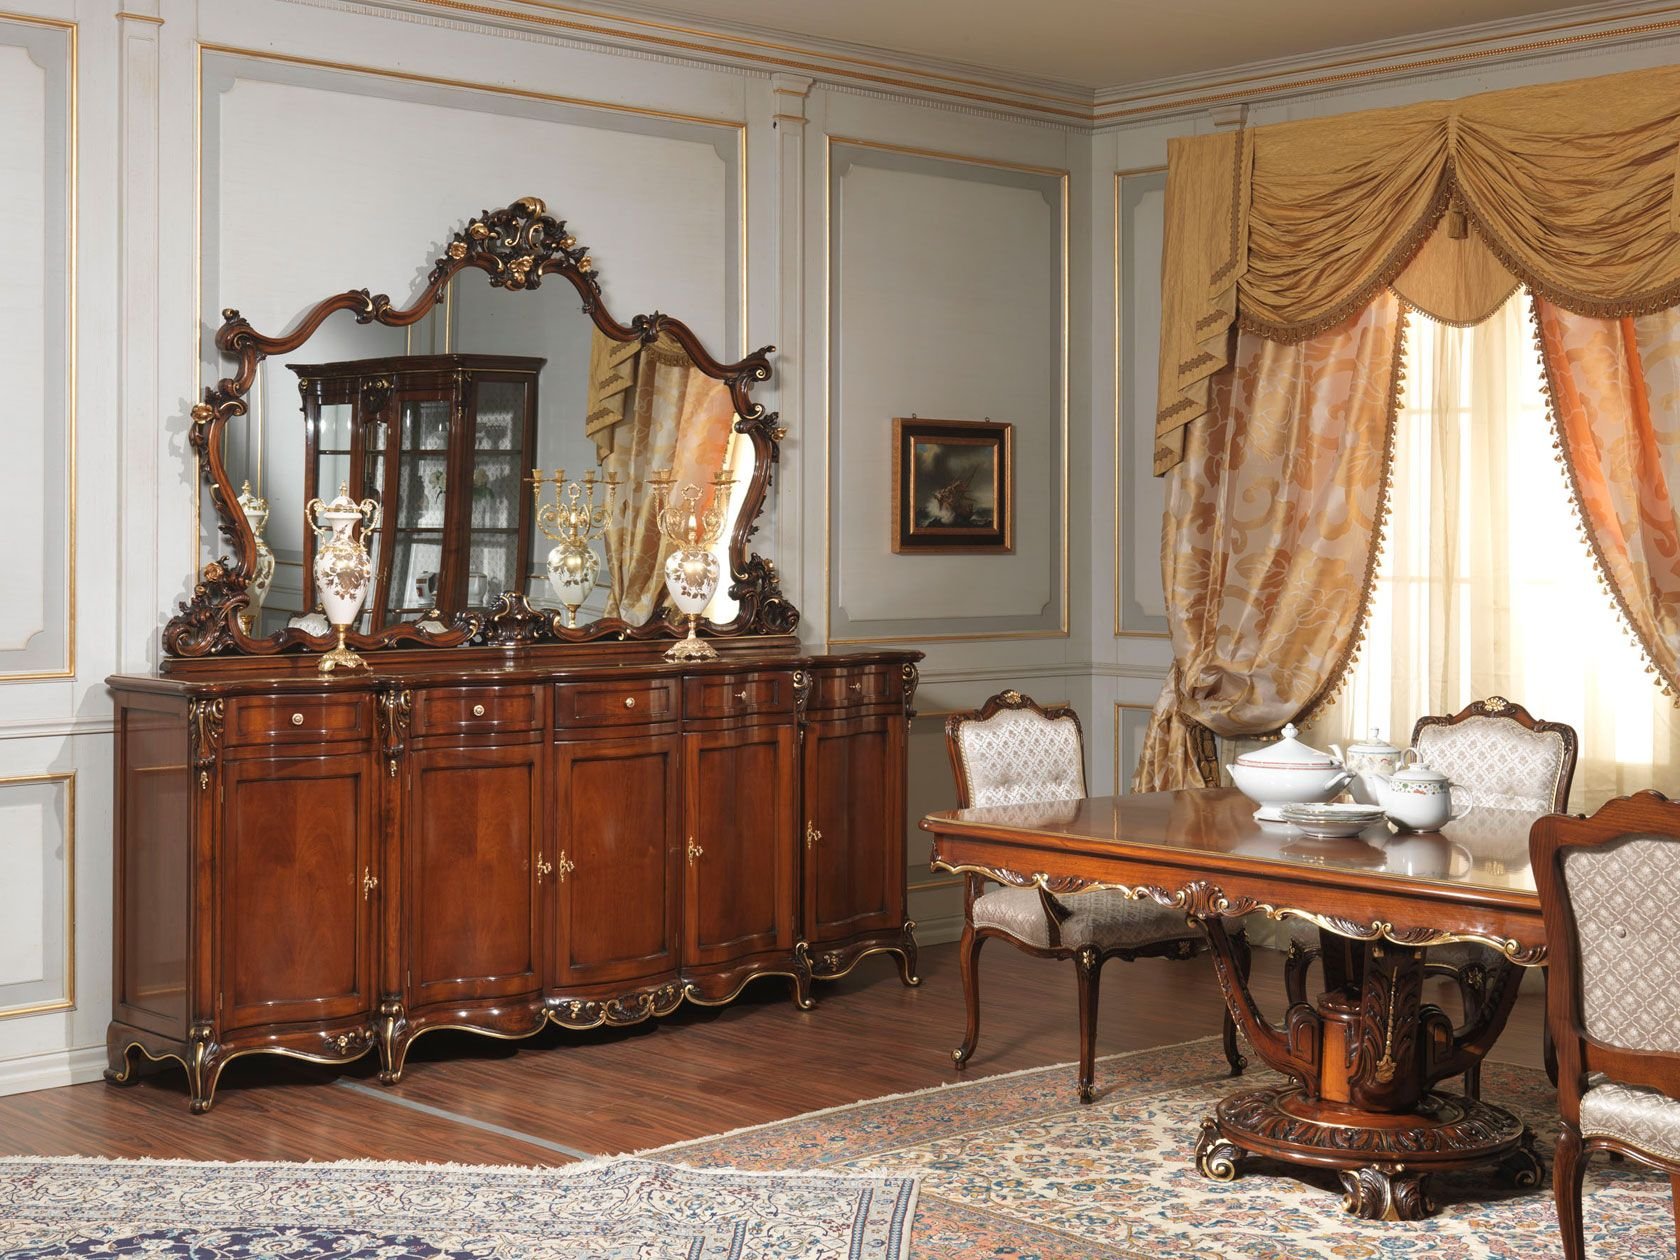 Классический комната мебель. Классицизм мебель 18 века. Румынская мебель Людовик d10.